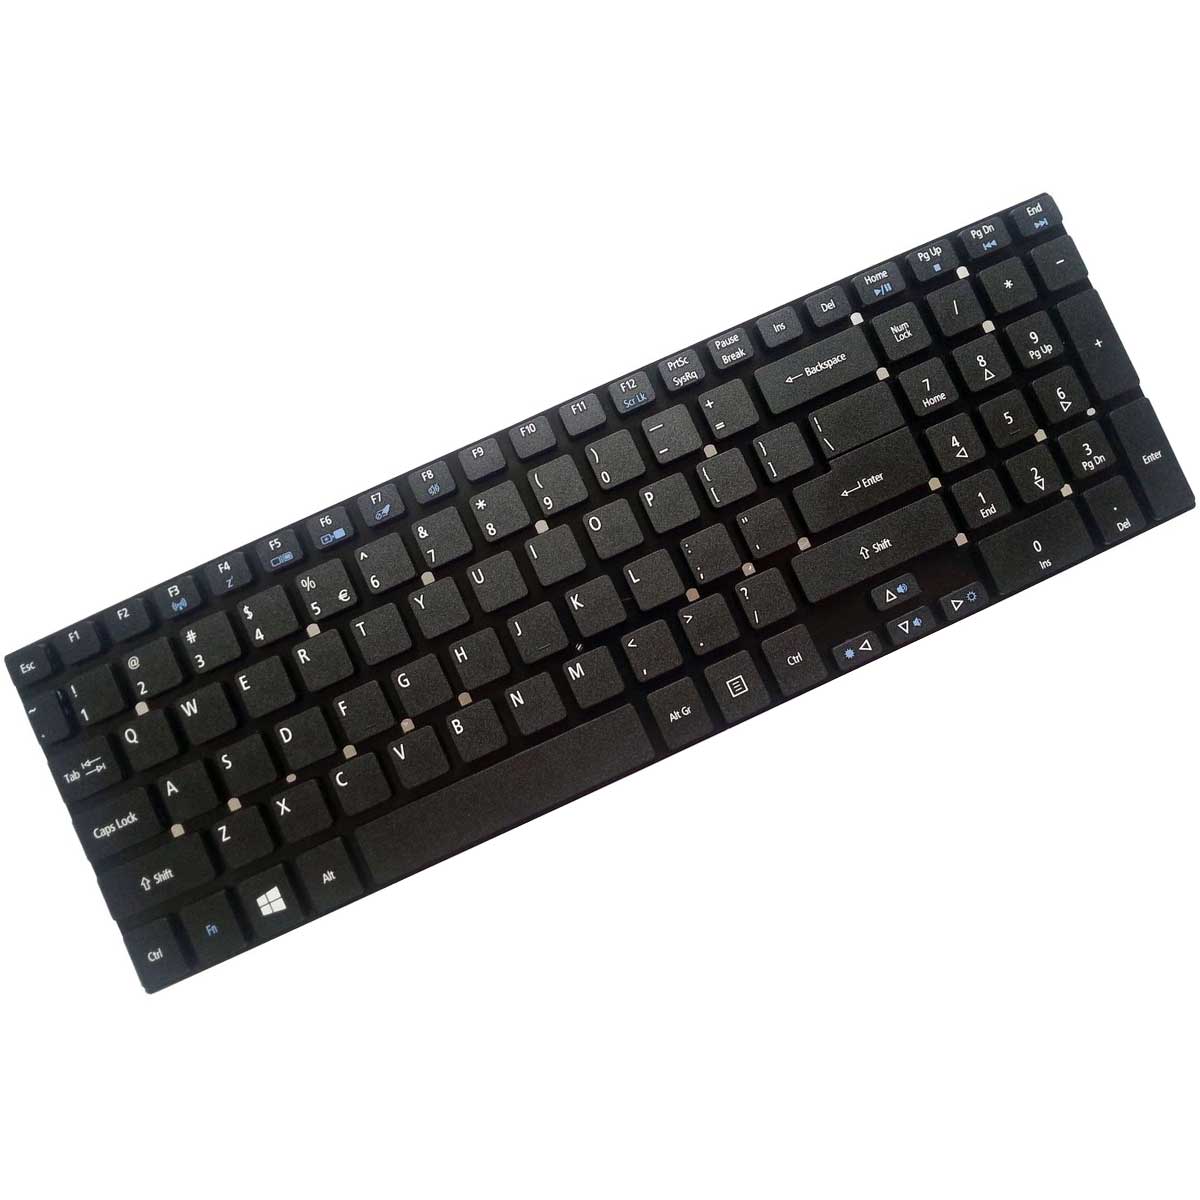 کیبورد لپ تاپ ایسر Keyboard Laptop Acer E1-570 E1-572 E1-572G 5755 5830 E1-530G V3-571G